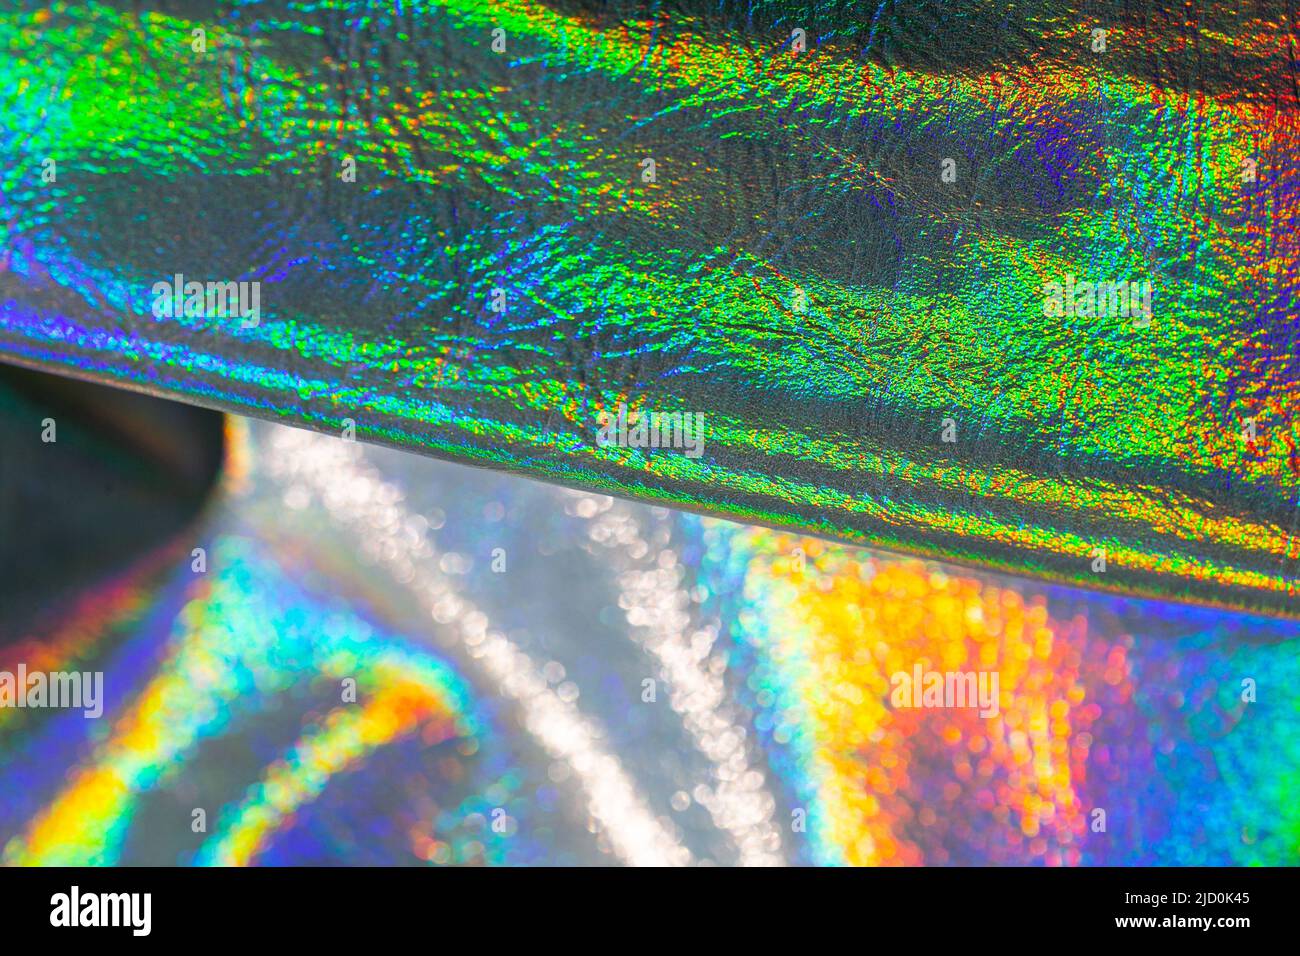 Holografische Tapete in Silber, lila und grünen Farben. Textur mit schillernden Wellen.schöne metallisch glänzenden Stoff.Metall holographischen Material. Stockfoto